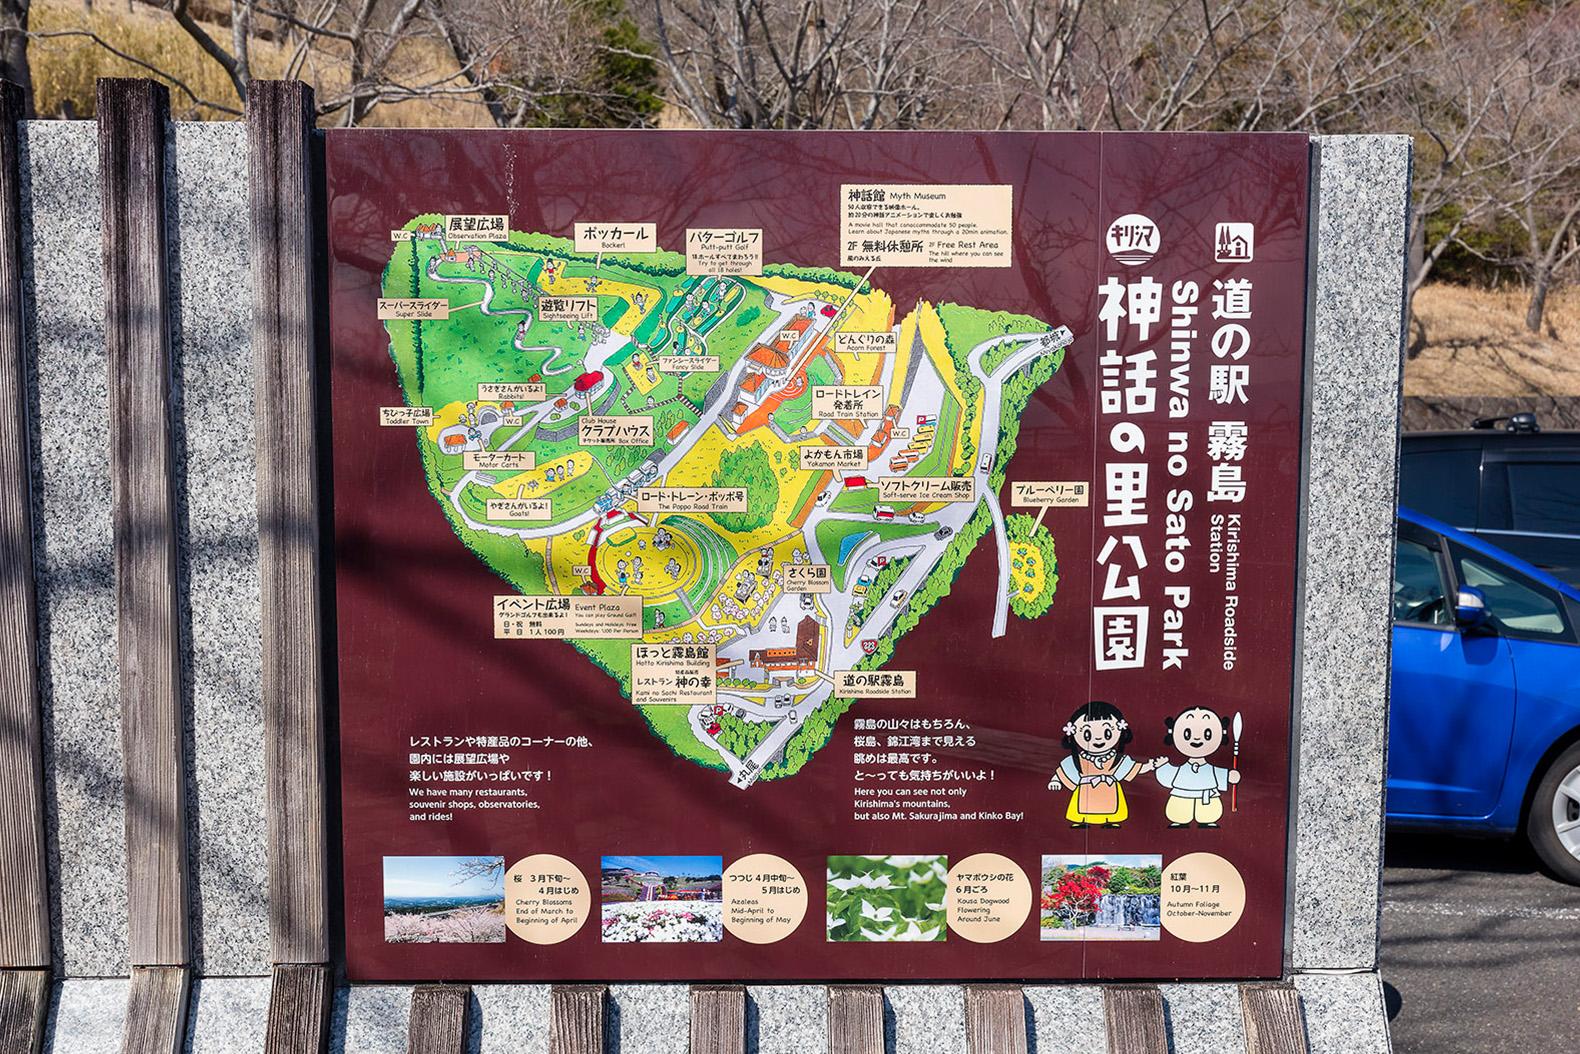 기리시마 신화의 마을 공원 (미치노에키 기리시마)-6